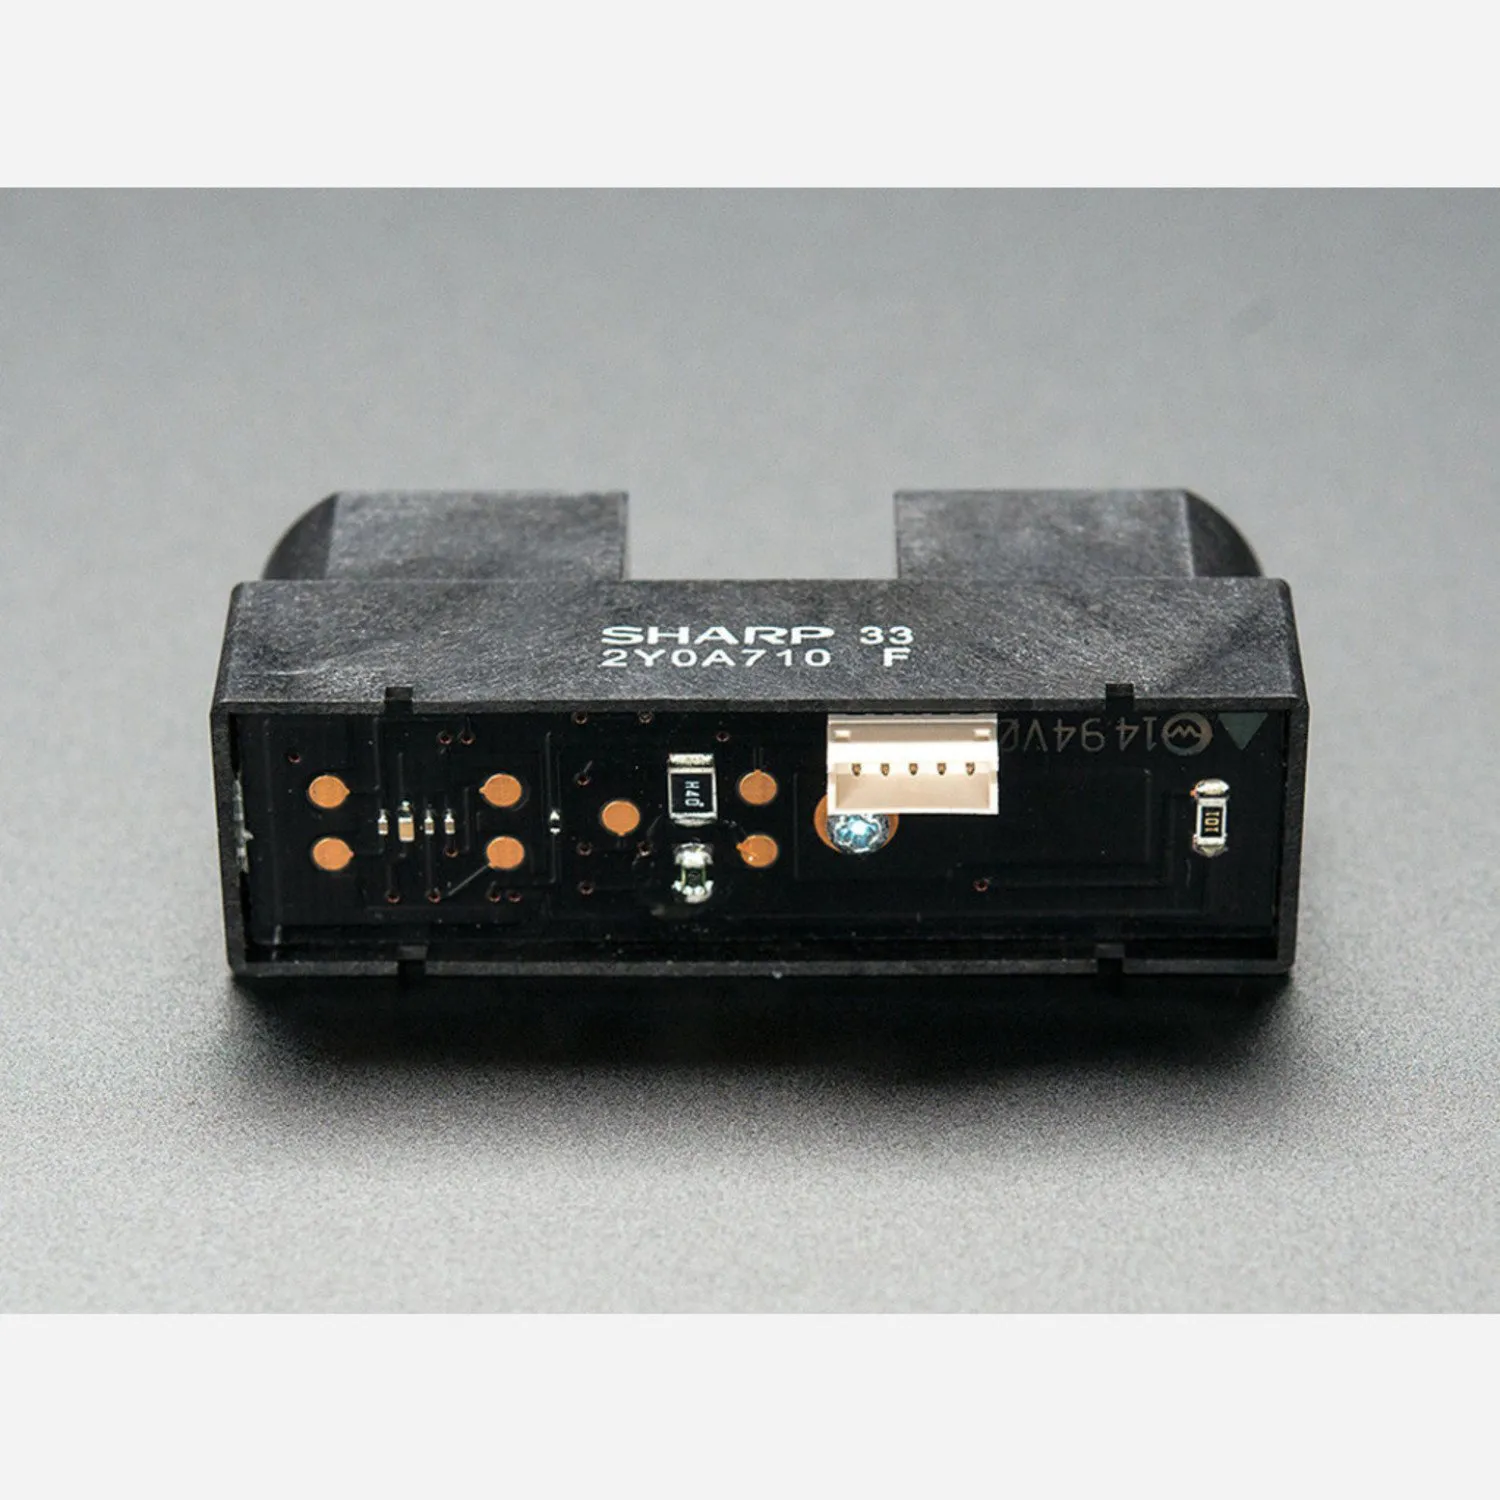 Photo of IR Distance Sensor - Includes Cable (100cm-500cm) [GP2Y0A710K0F]